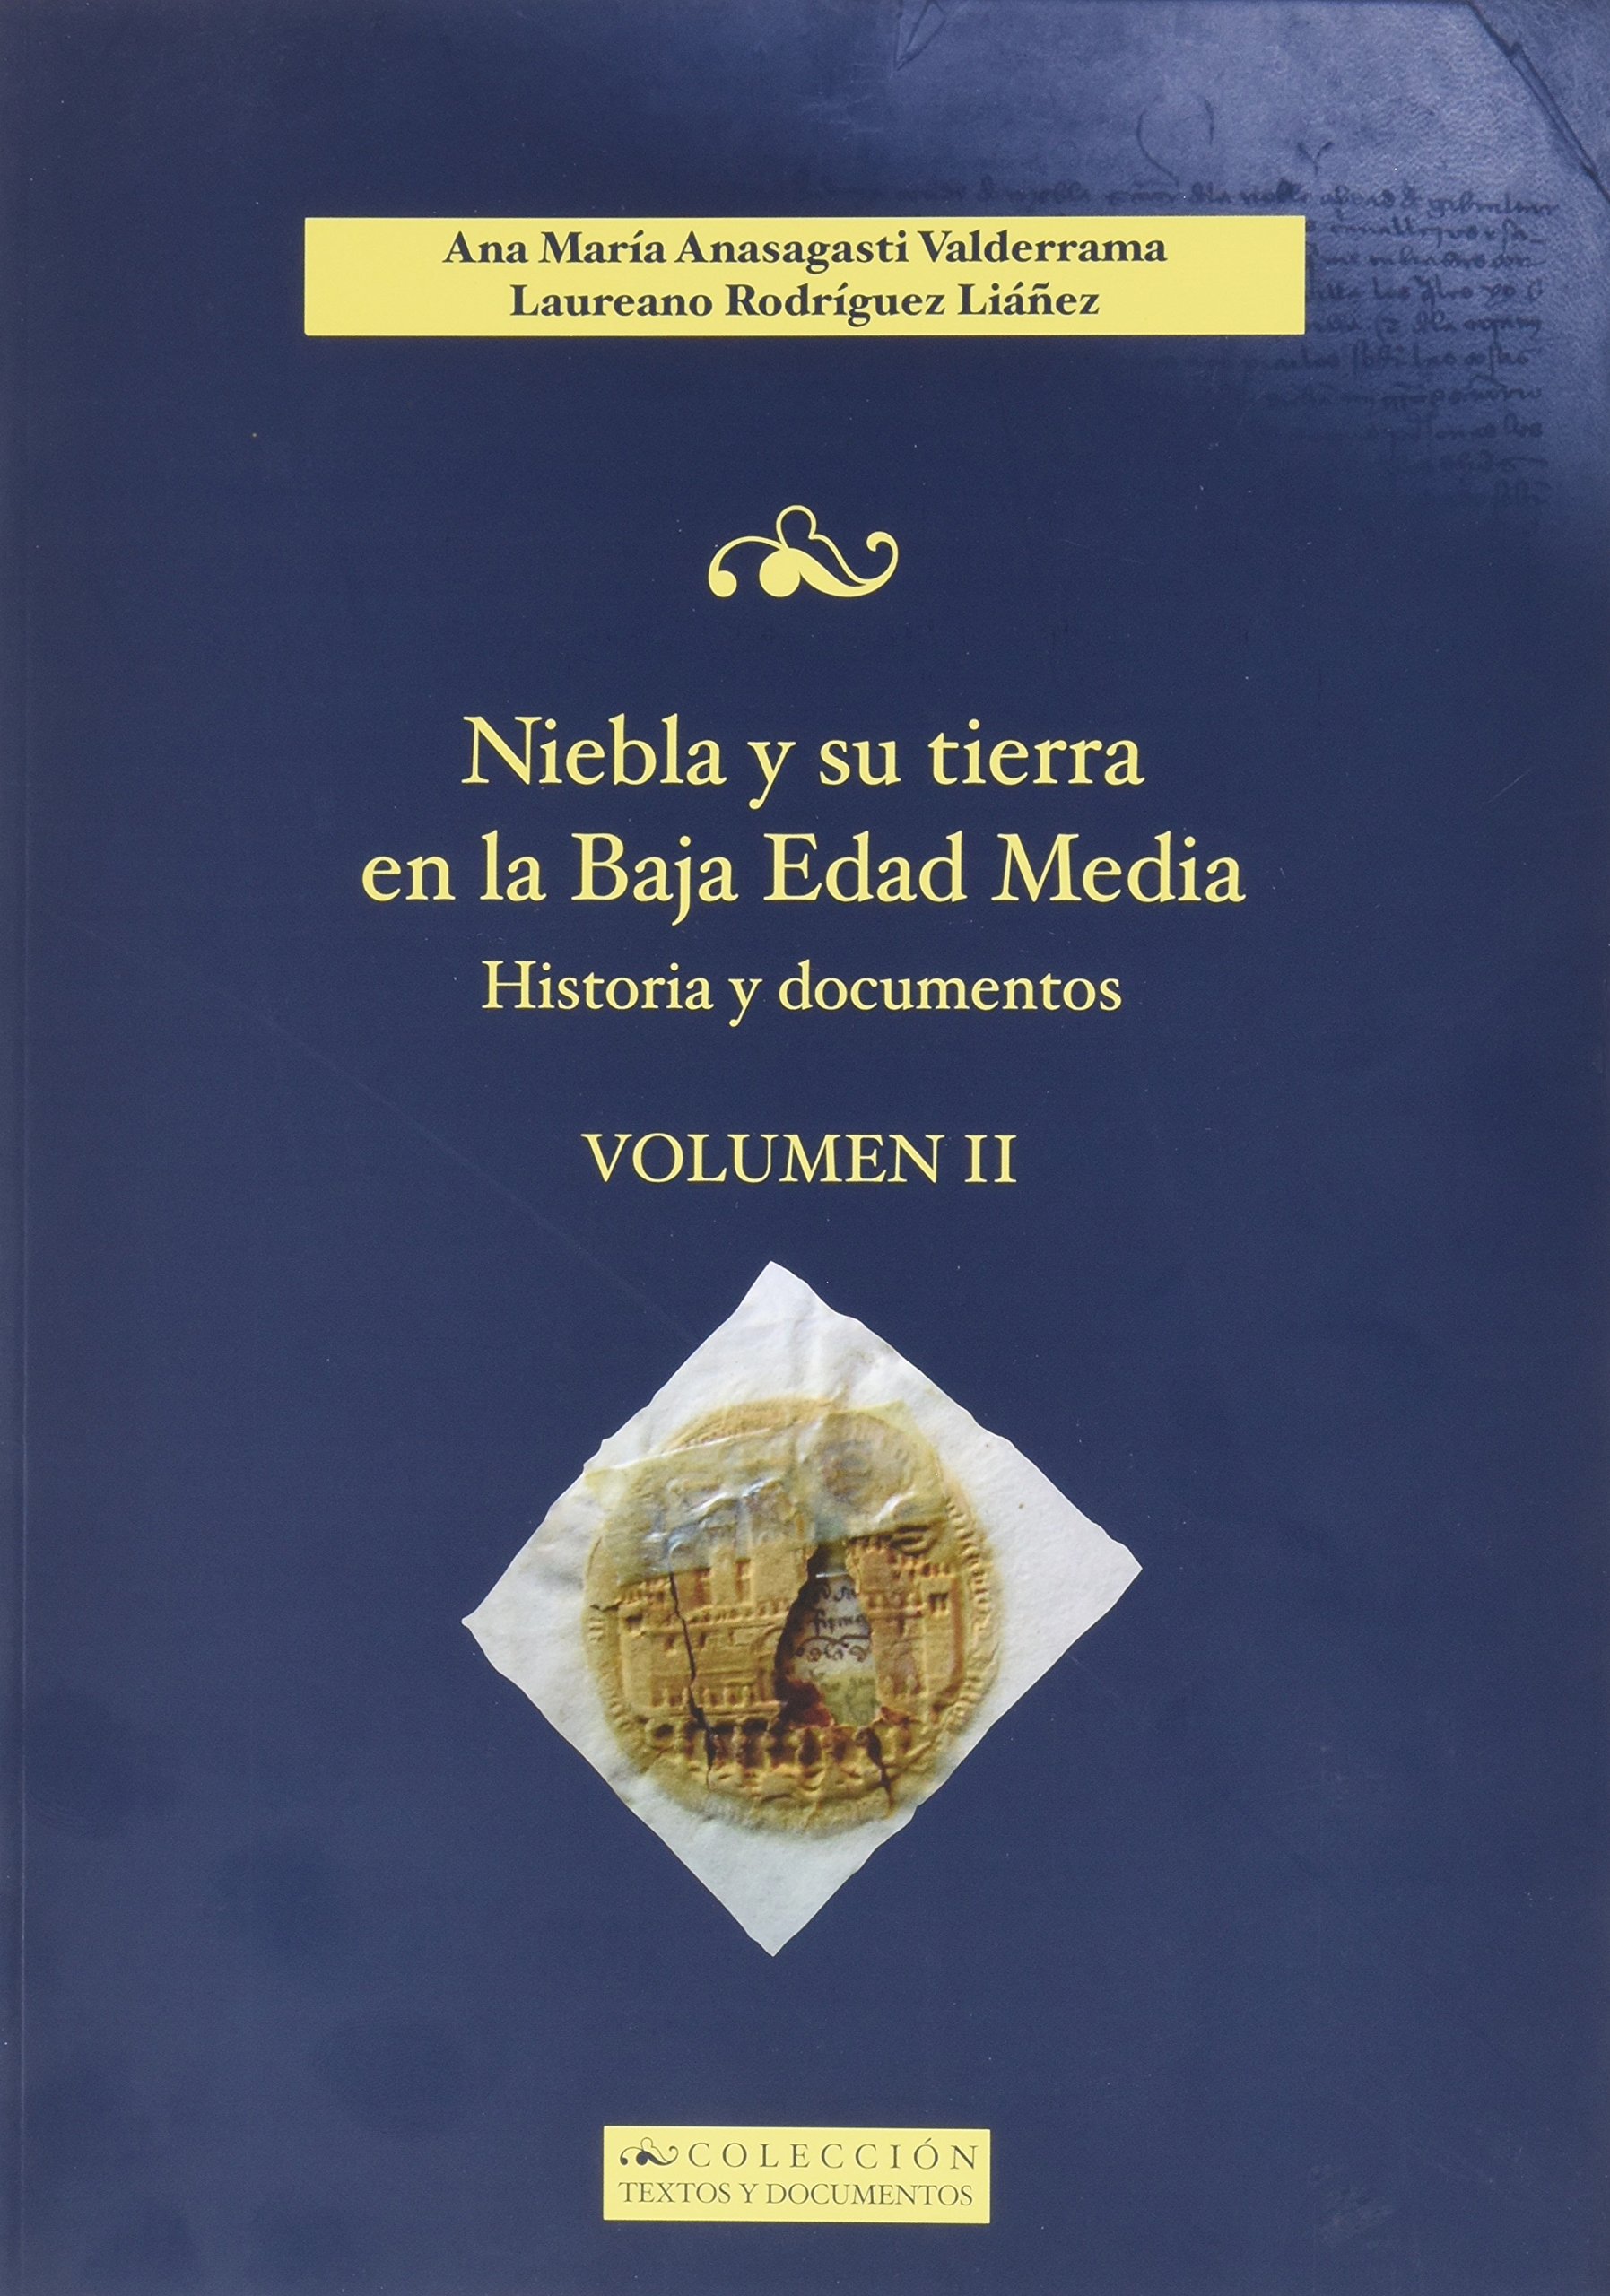 Imagen de portada del libro Niebla y su tierra en la Baja Edad Media